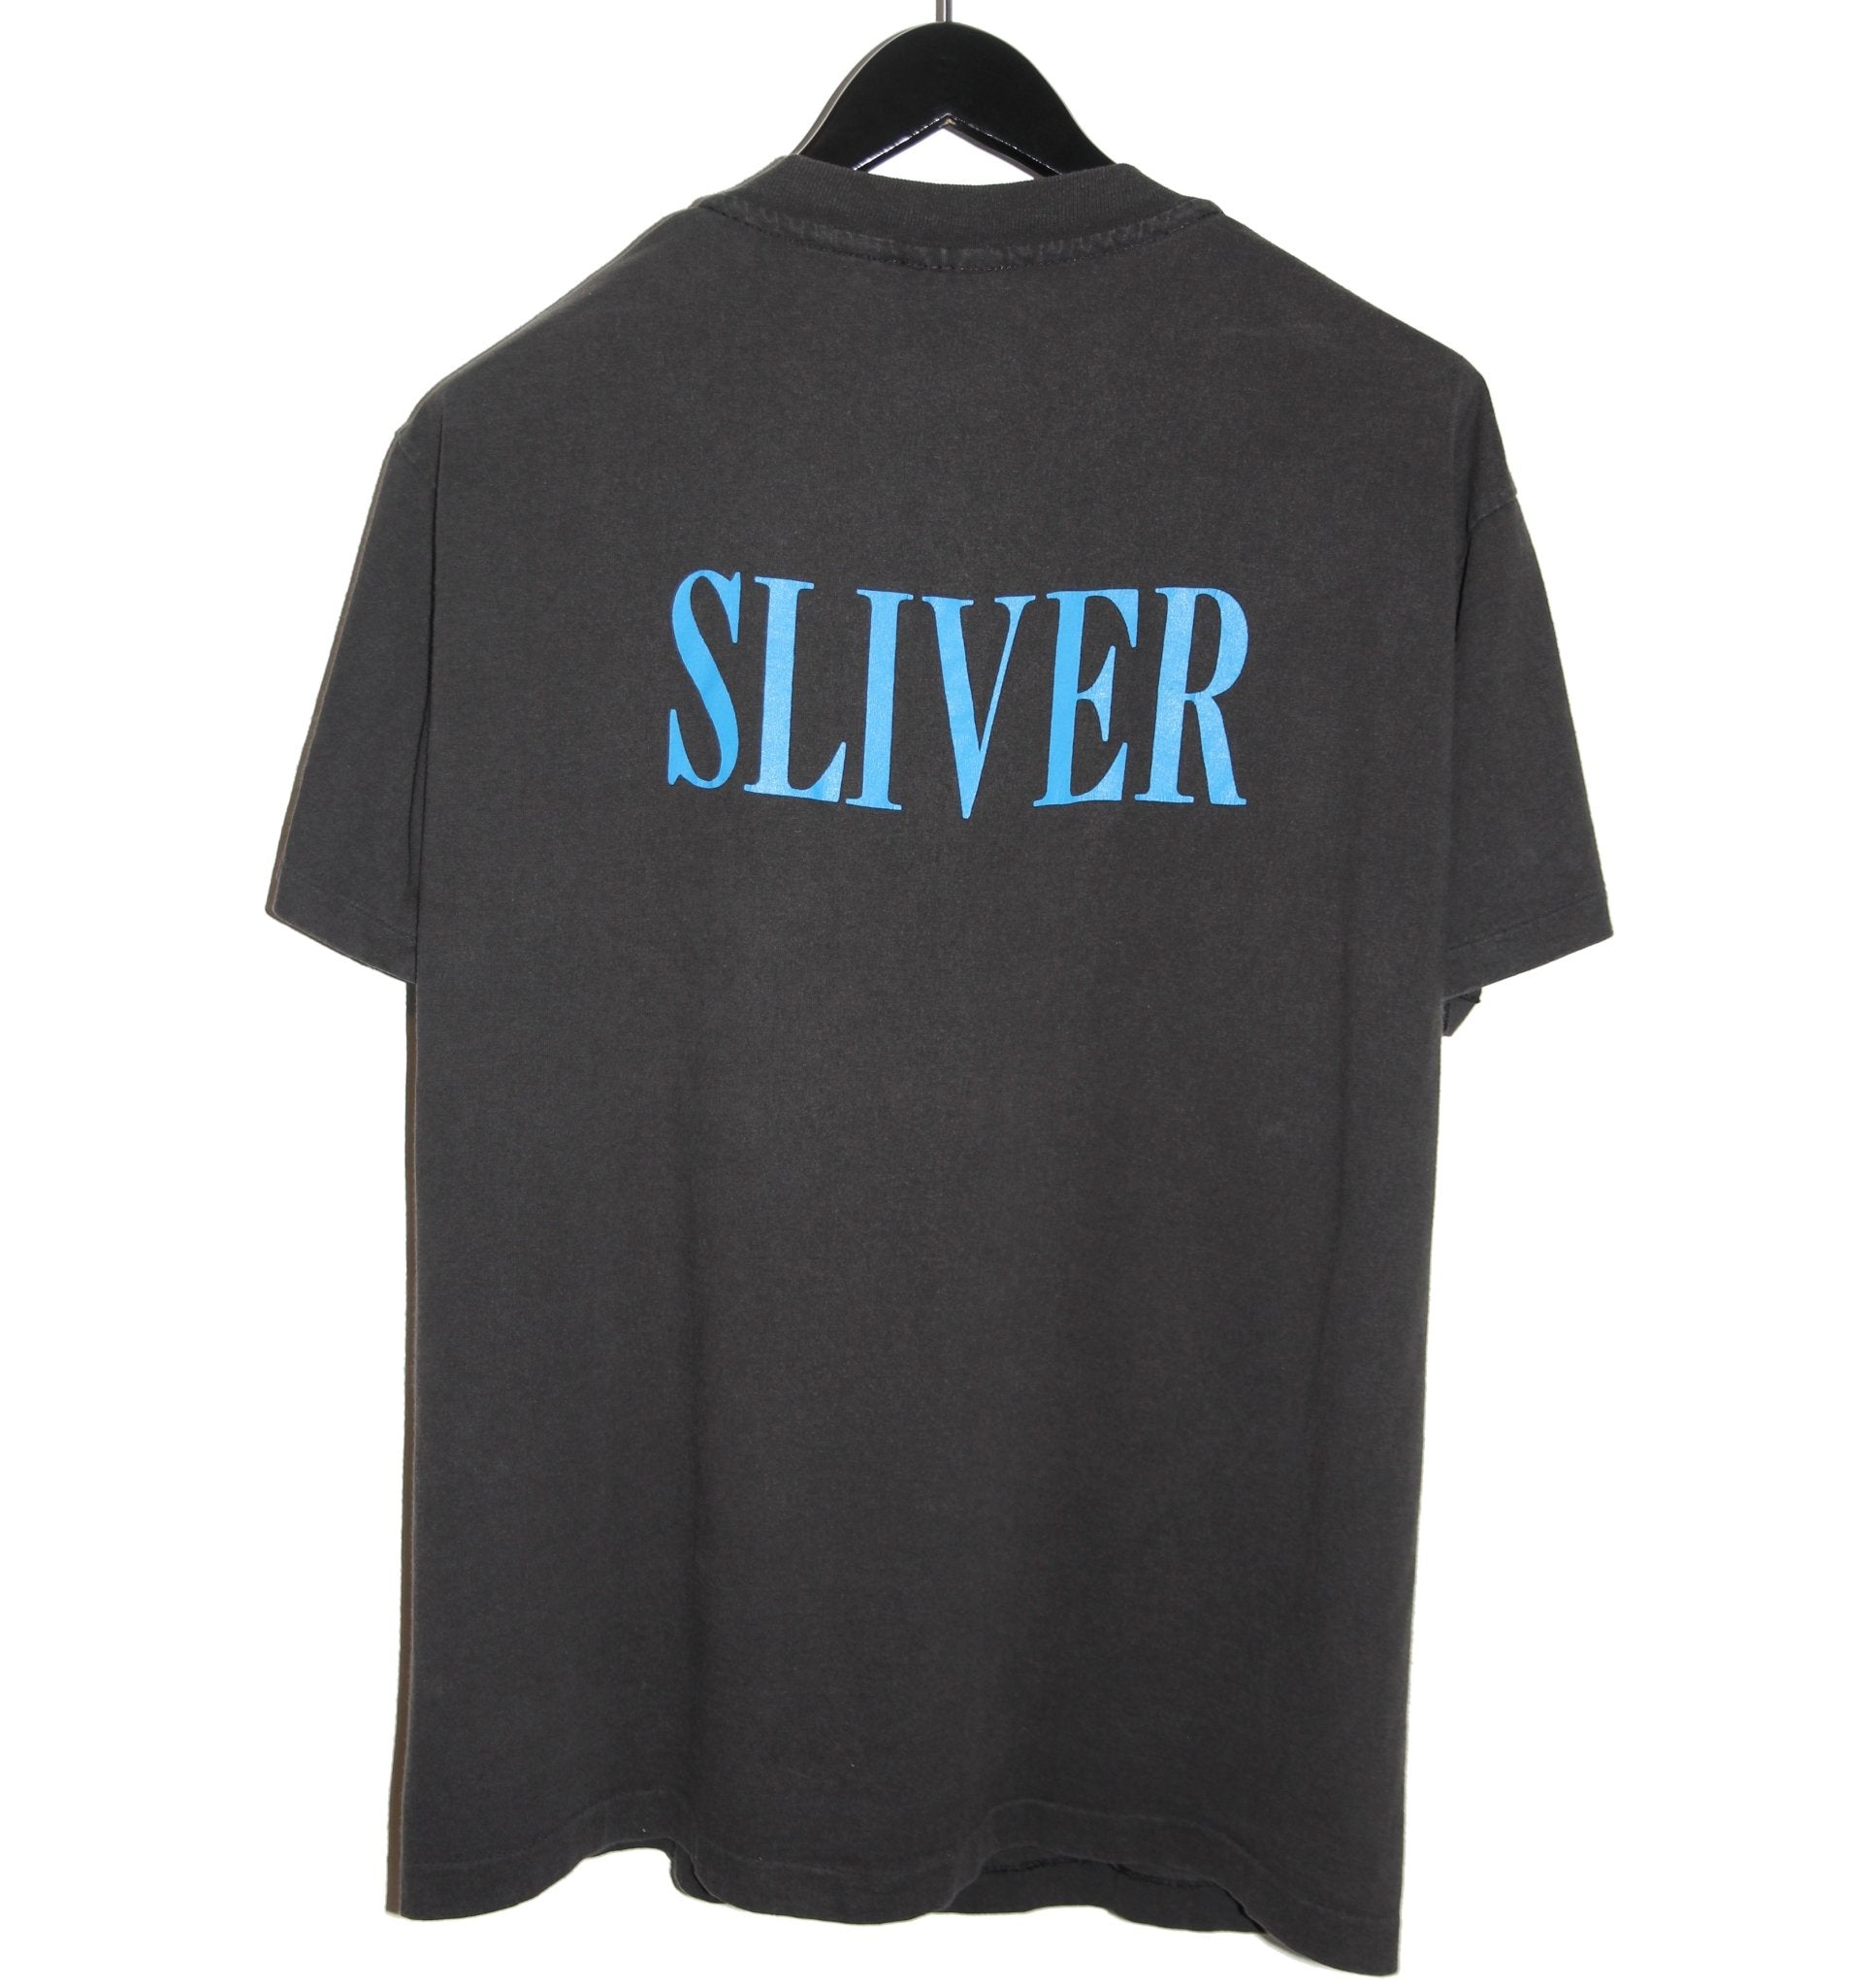 Nirvana 1993 Sliver Shirt - Faded AU